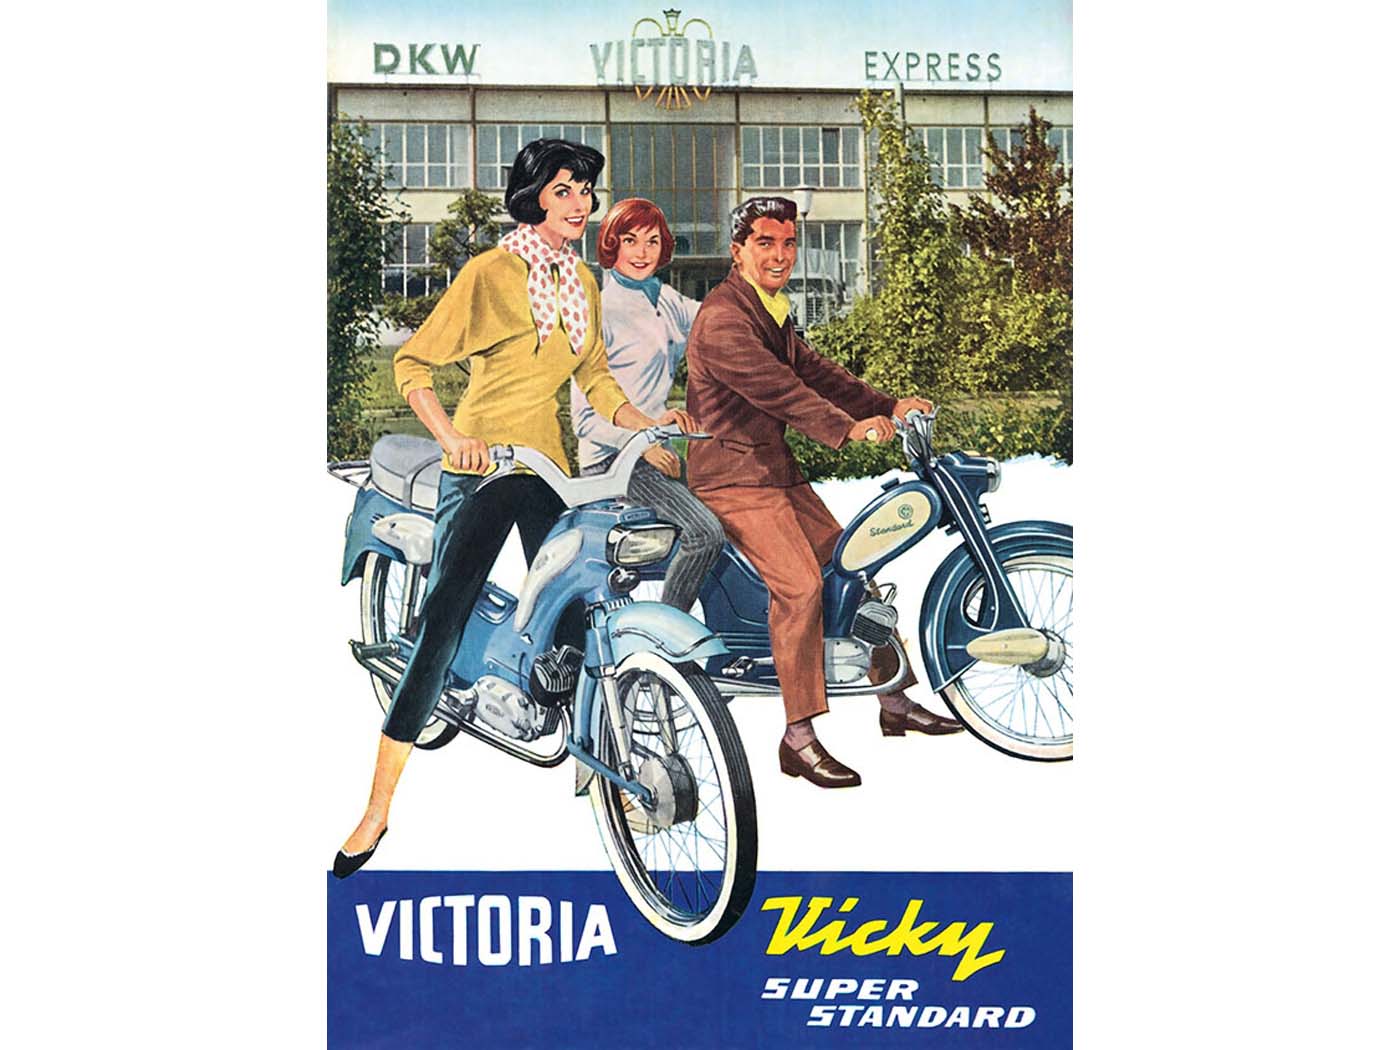 Werbeplakat Nachdruck 42cm 29cm für Victoria (DKW Express), Vicky Stan